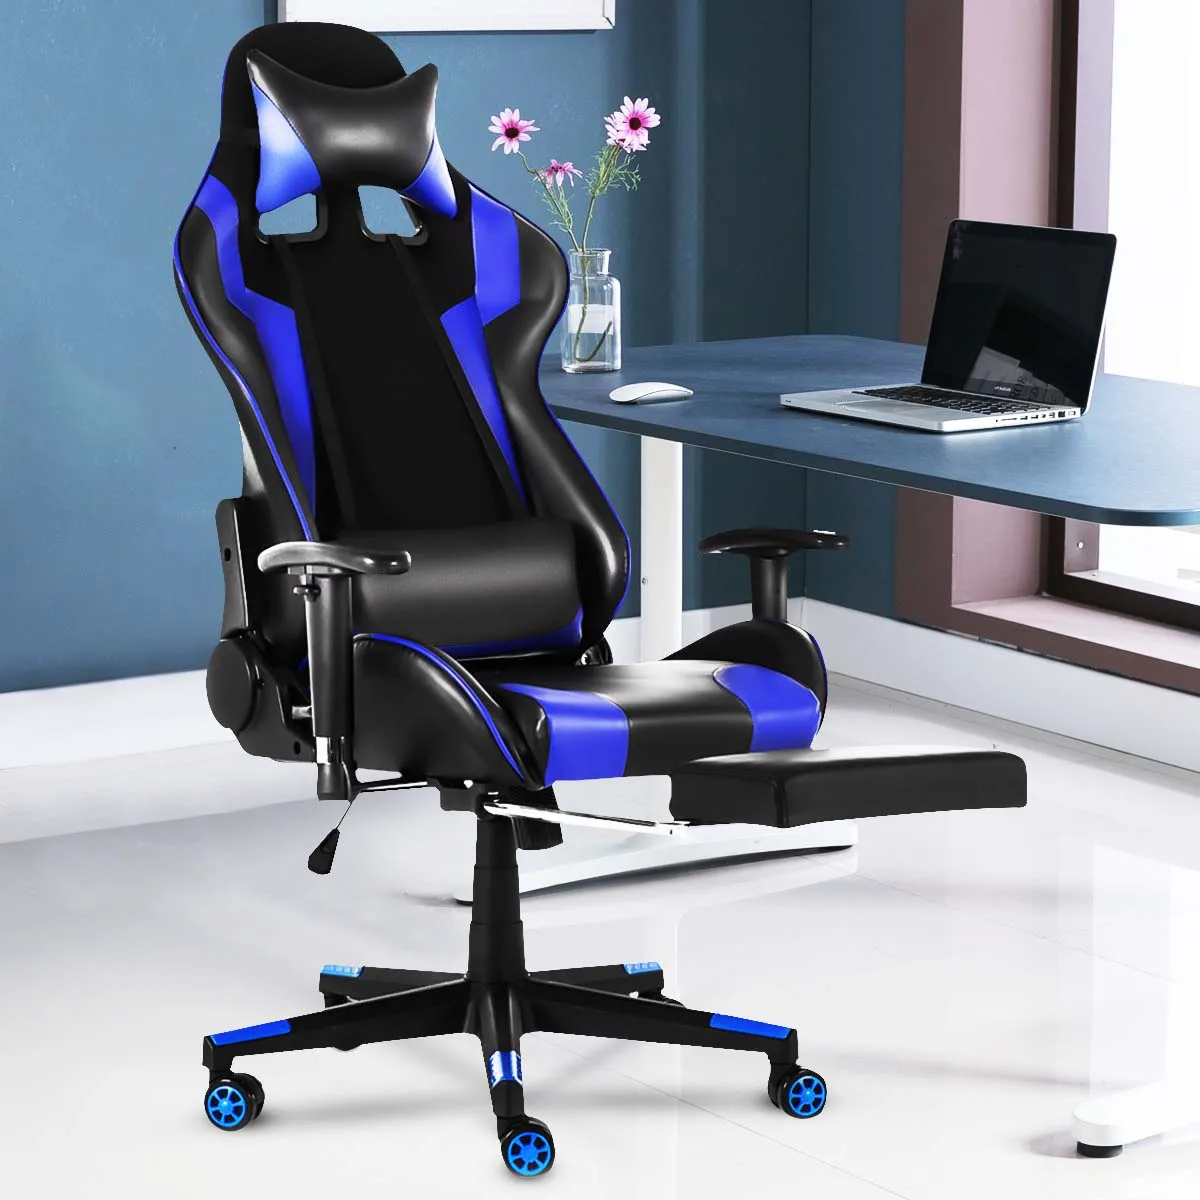 

Офисное кресло WCG игровое Кресло компьютерное кресло, офисные кресла, офисная мебель, кресла домашний стул геймера стол и стул